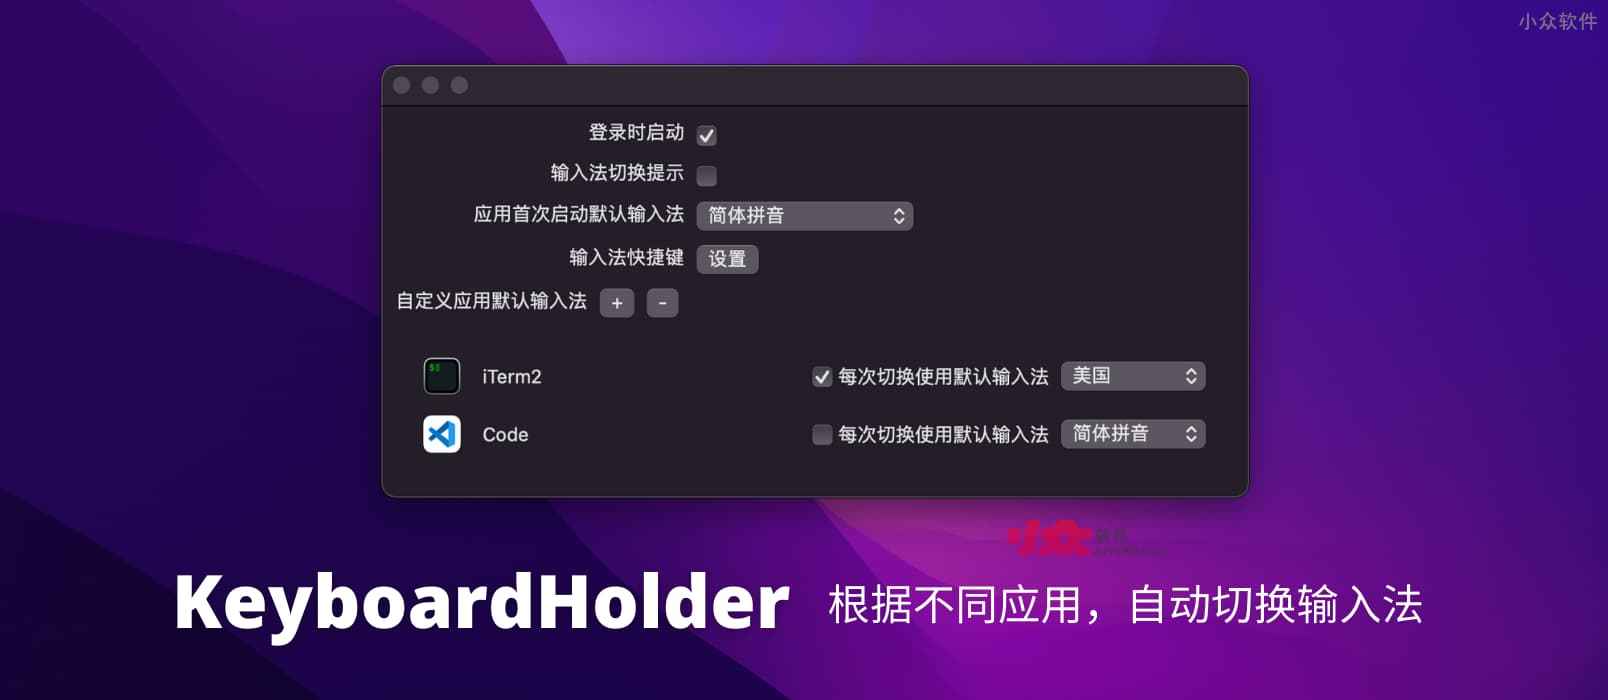 KeyboardHolder - 根据不同应用，自动切换输入法[macOS]